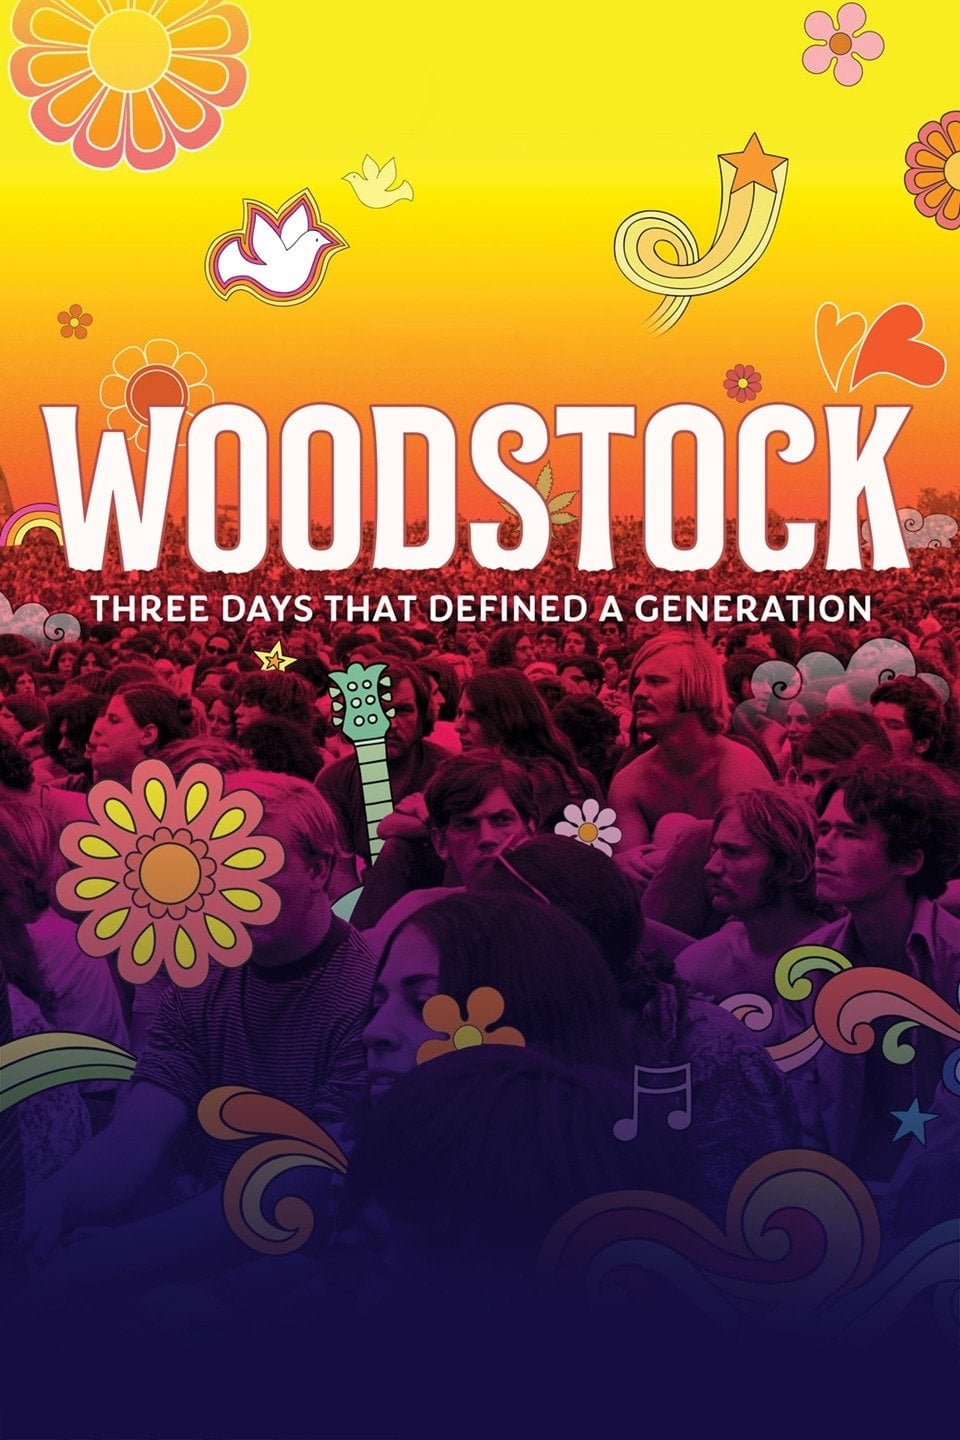 Woodstock, ils voulaient changer le monde